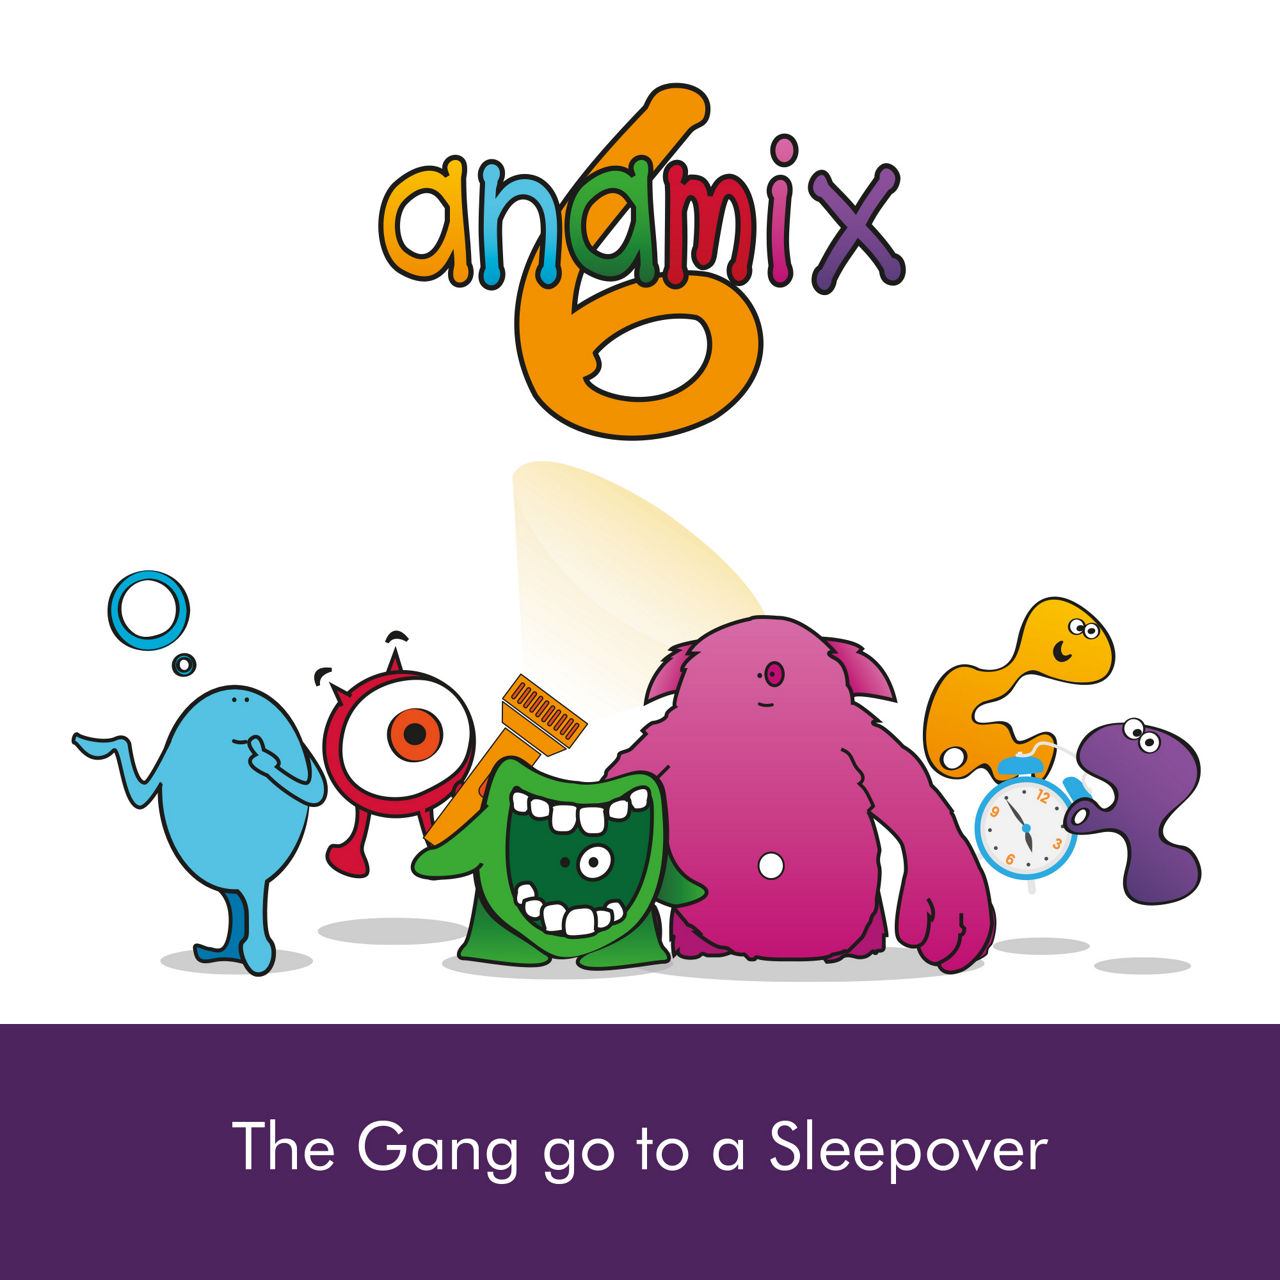 Anamix 6 Gang go to sleep